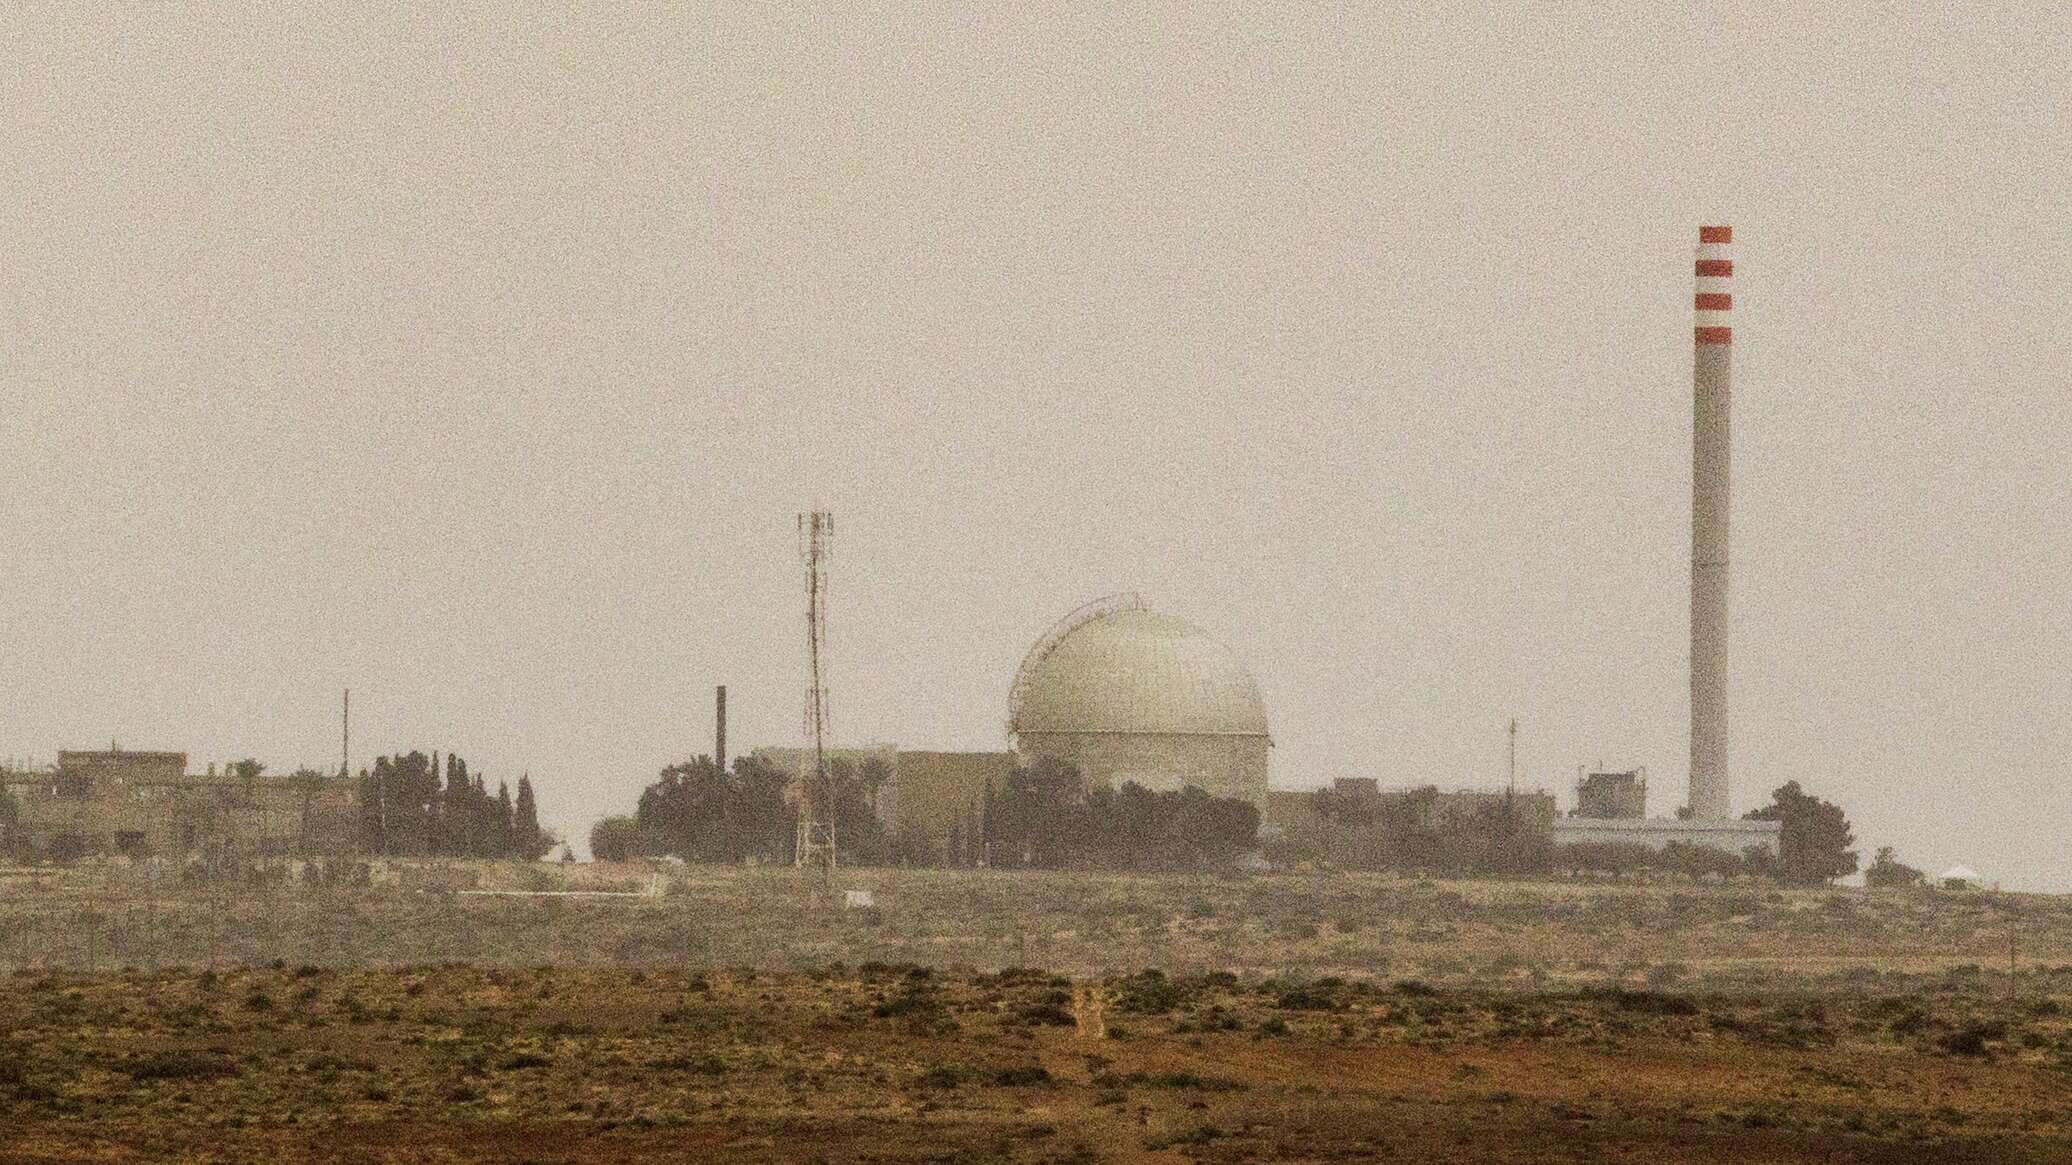 الحرس الثوري الإيراني: الأضرار بمفاعل "ديمونة" النووي الإسرائيلي نتيجة هجومنا "كذبة كبيرة"